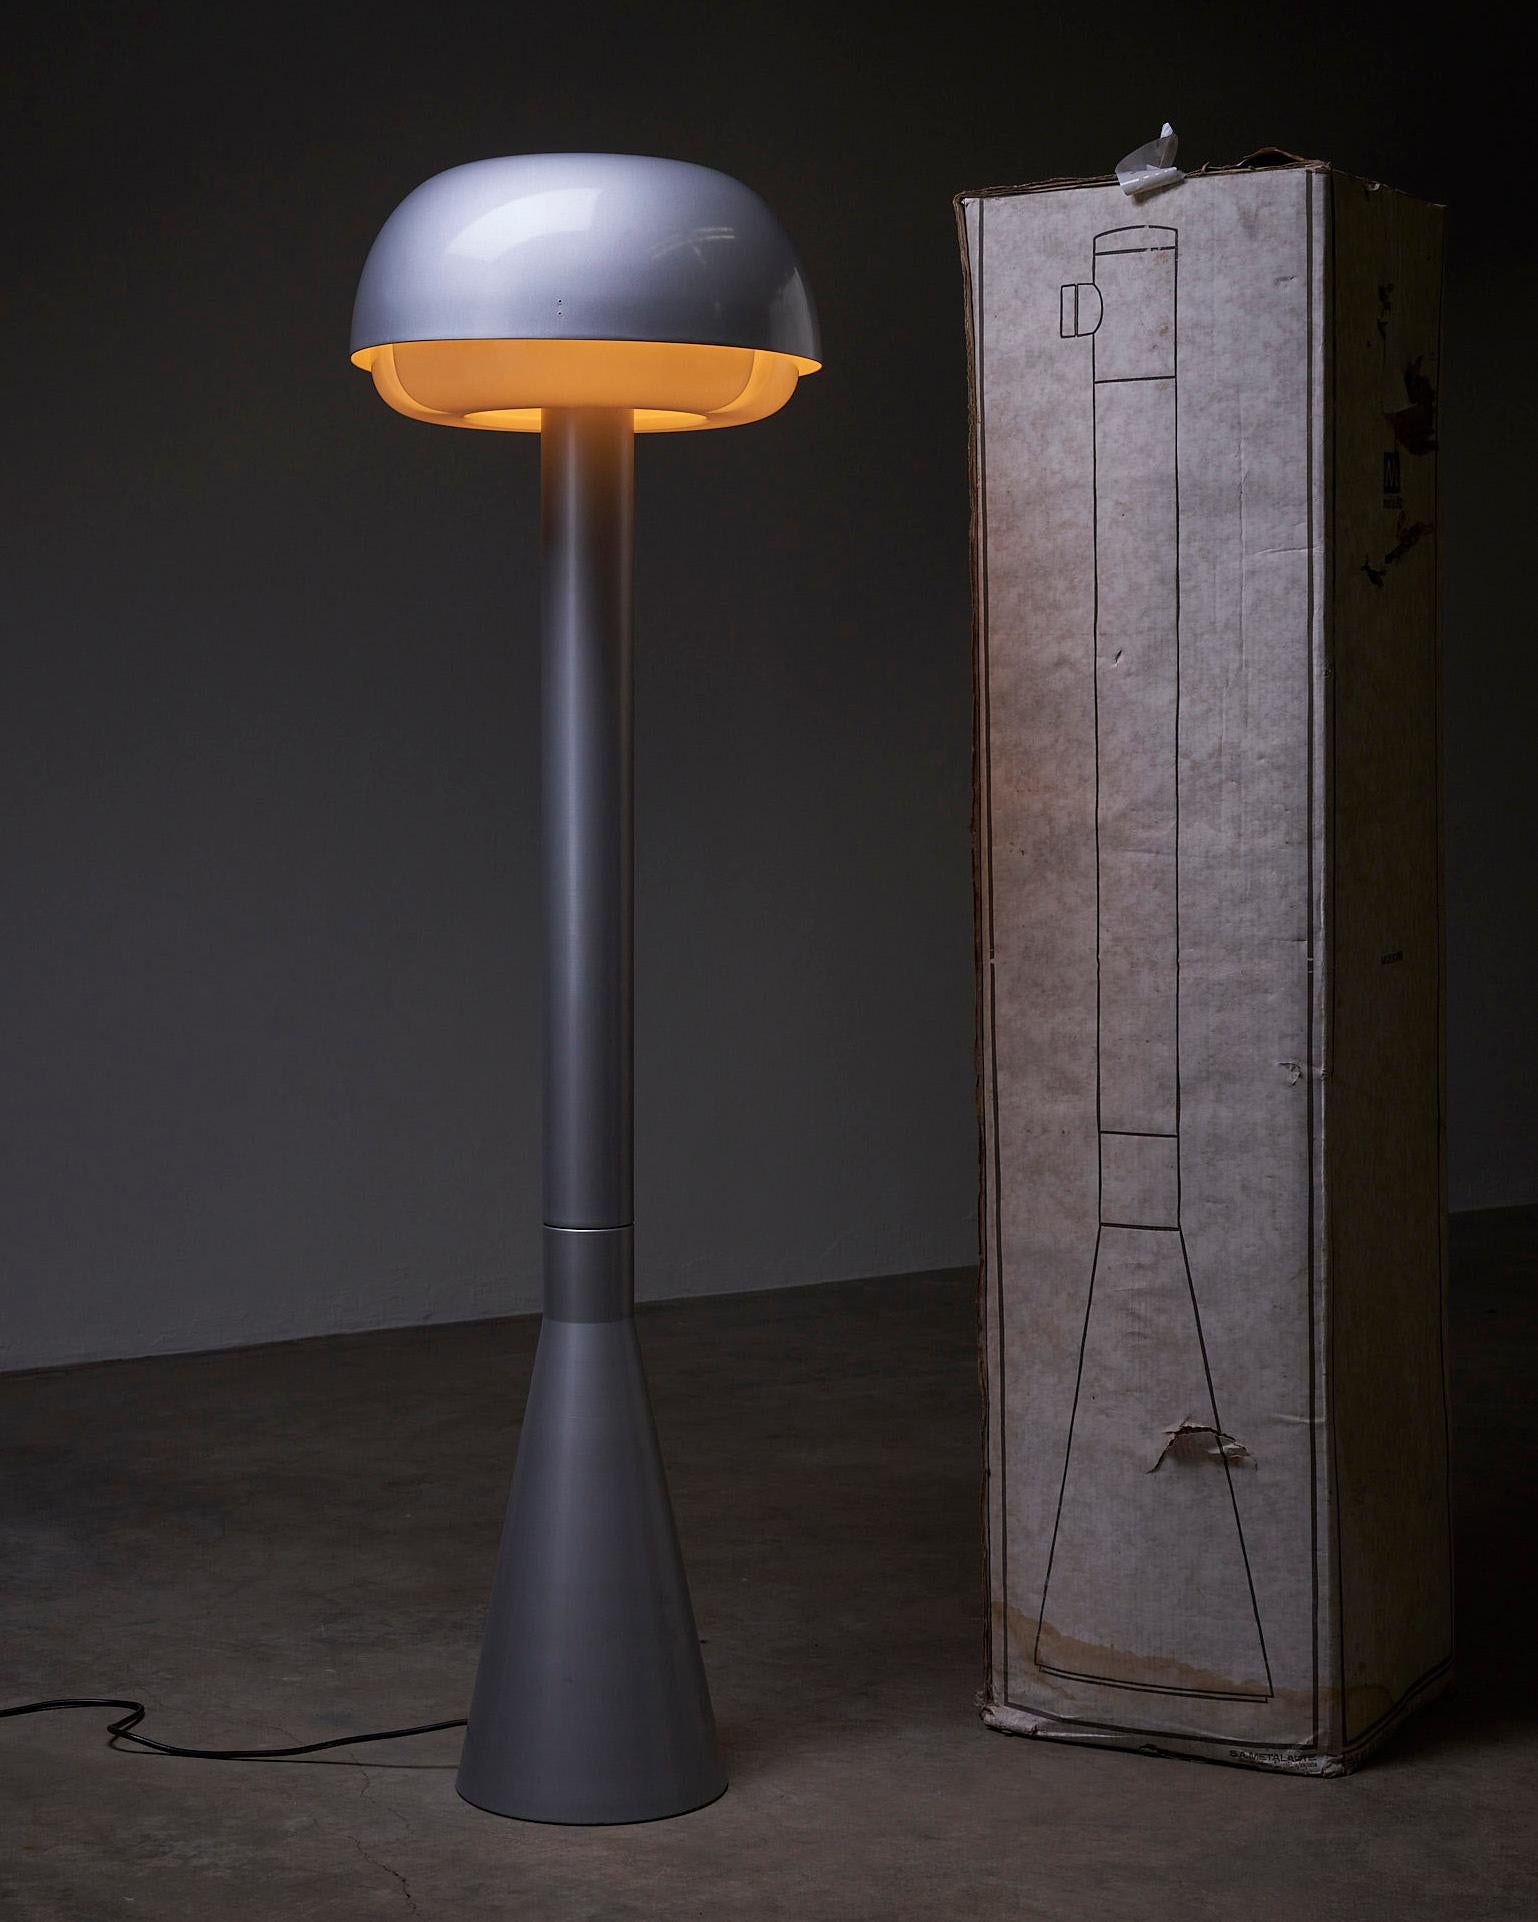 Voici le Portable Floor Lamp by Metalarte, une remarquable pièce d'éclairage conçue par Enrique Franch et fabriquée en Espagne. Ce lampadaire présente un design épuré et moderne, avec une palette de couleurs gris métallisé frappantes qui exsudent la